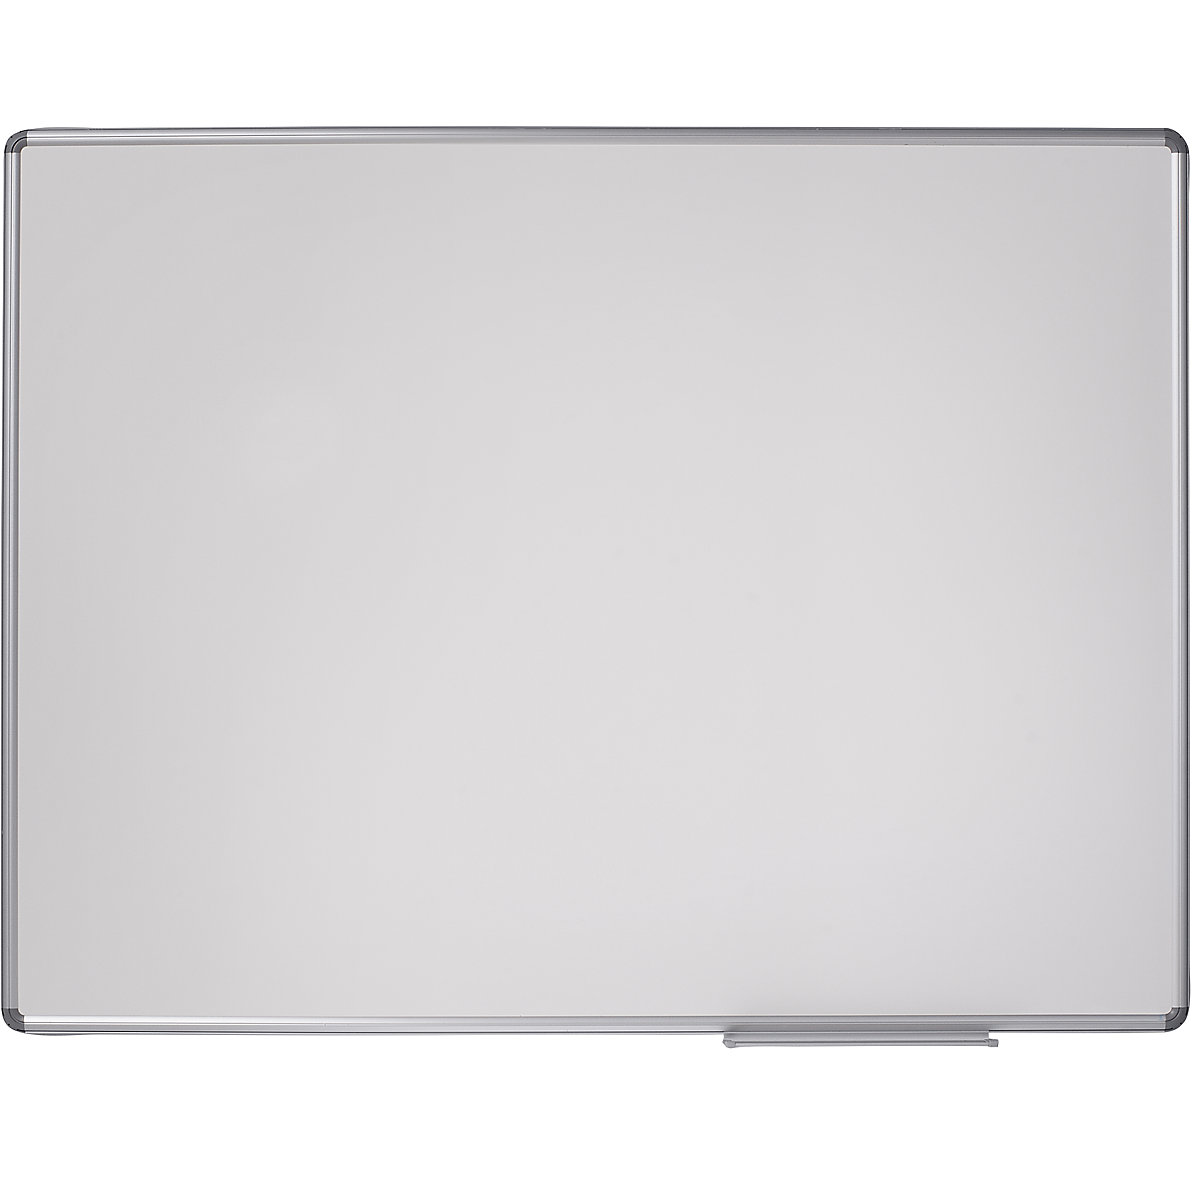 Designer notice board – eurokraft pro, sheet steel, enamel, WxH 1200 x 900 mm-10